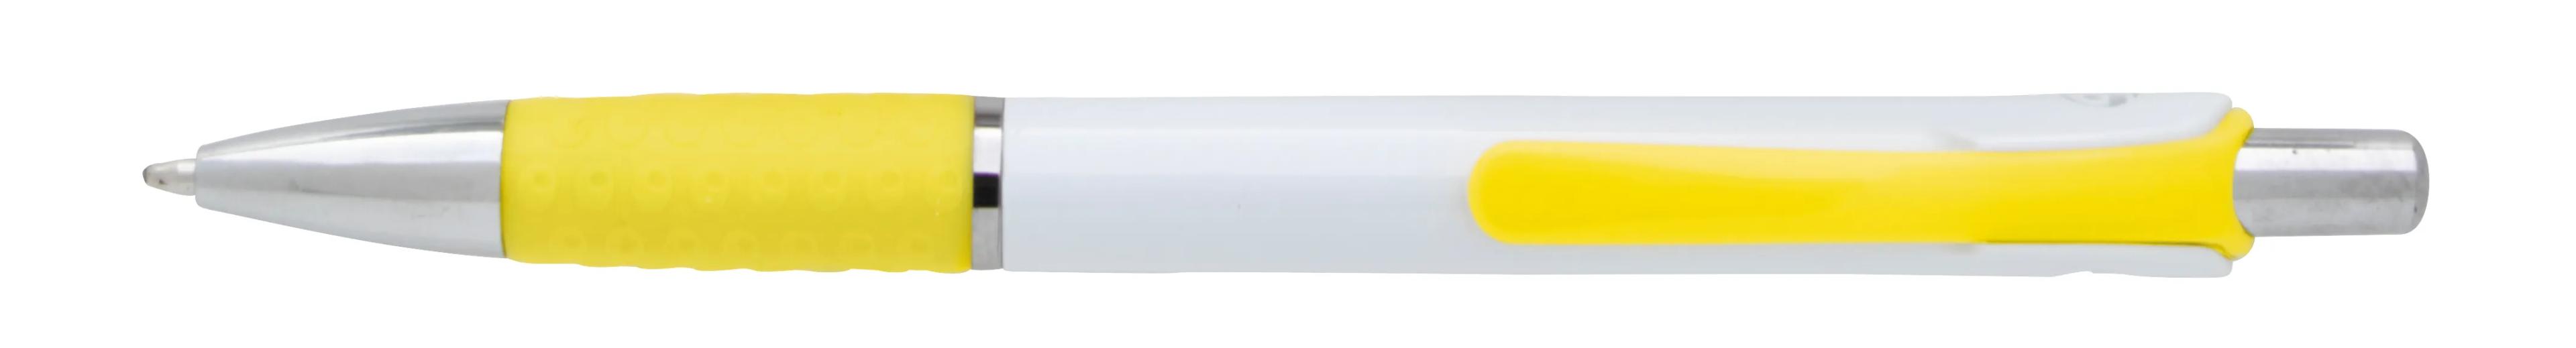 Souvenir® Image Grip Pen 33 of 50